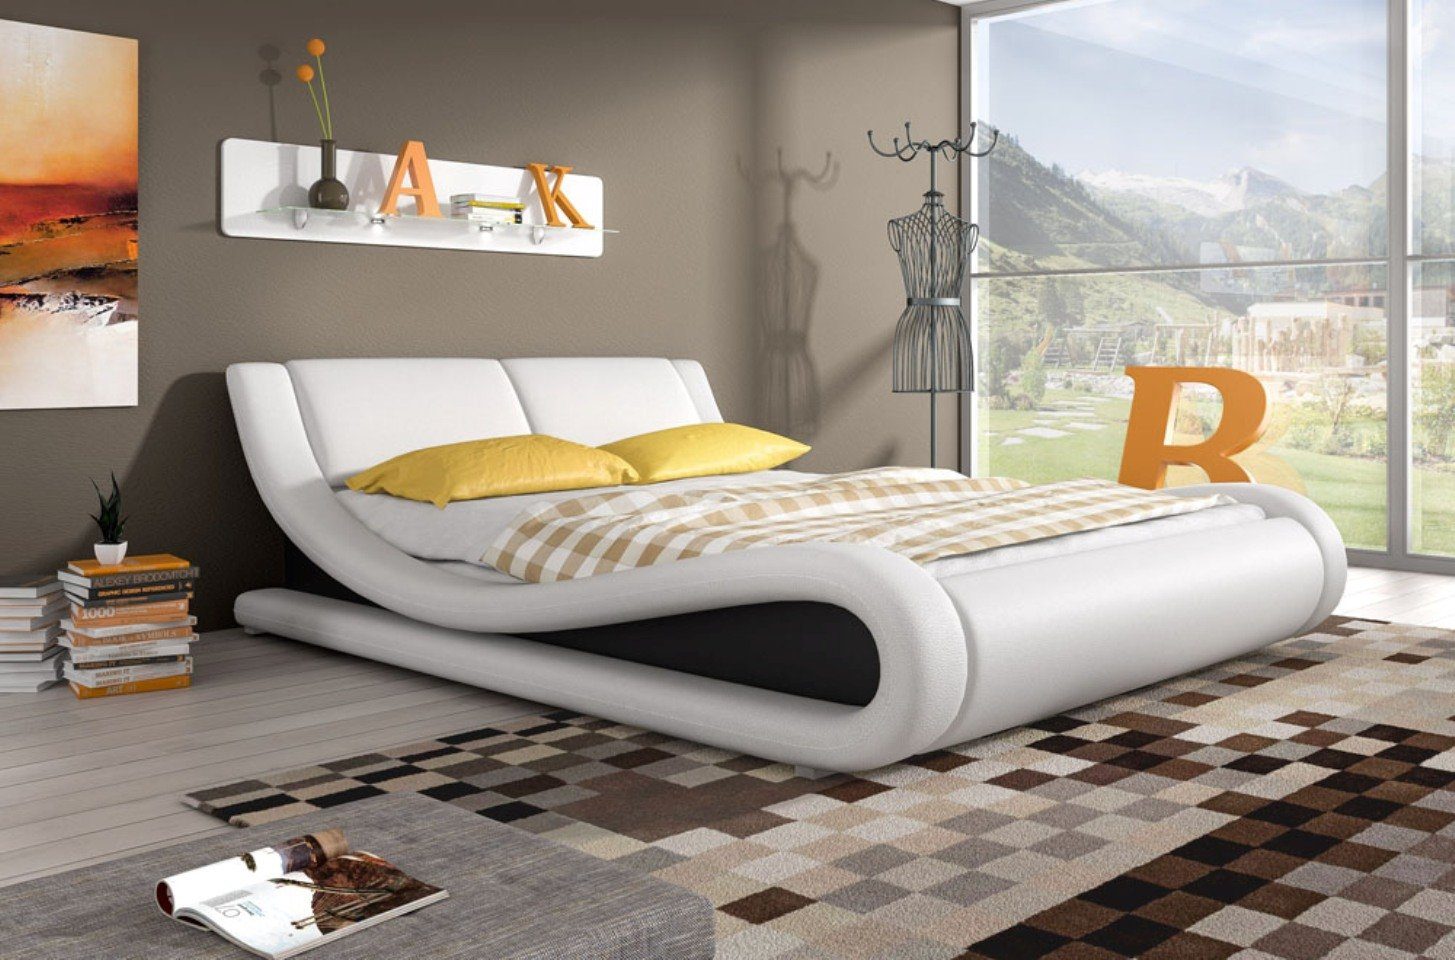 JVmoebel Bett »Polsterbett Betten Bett Polster Kunstleder Designer Hotel  Doppel Luxus Design« online kaufen | OTTO